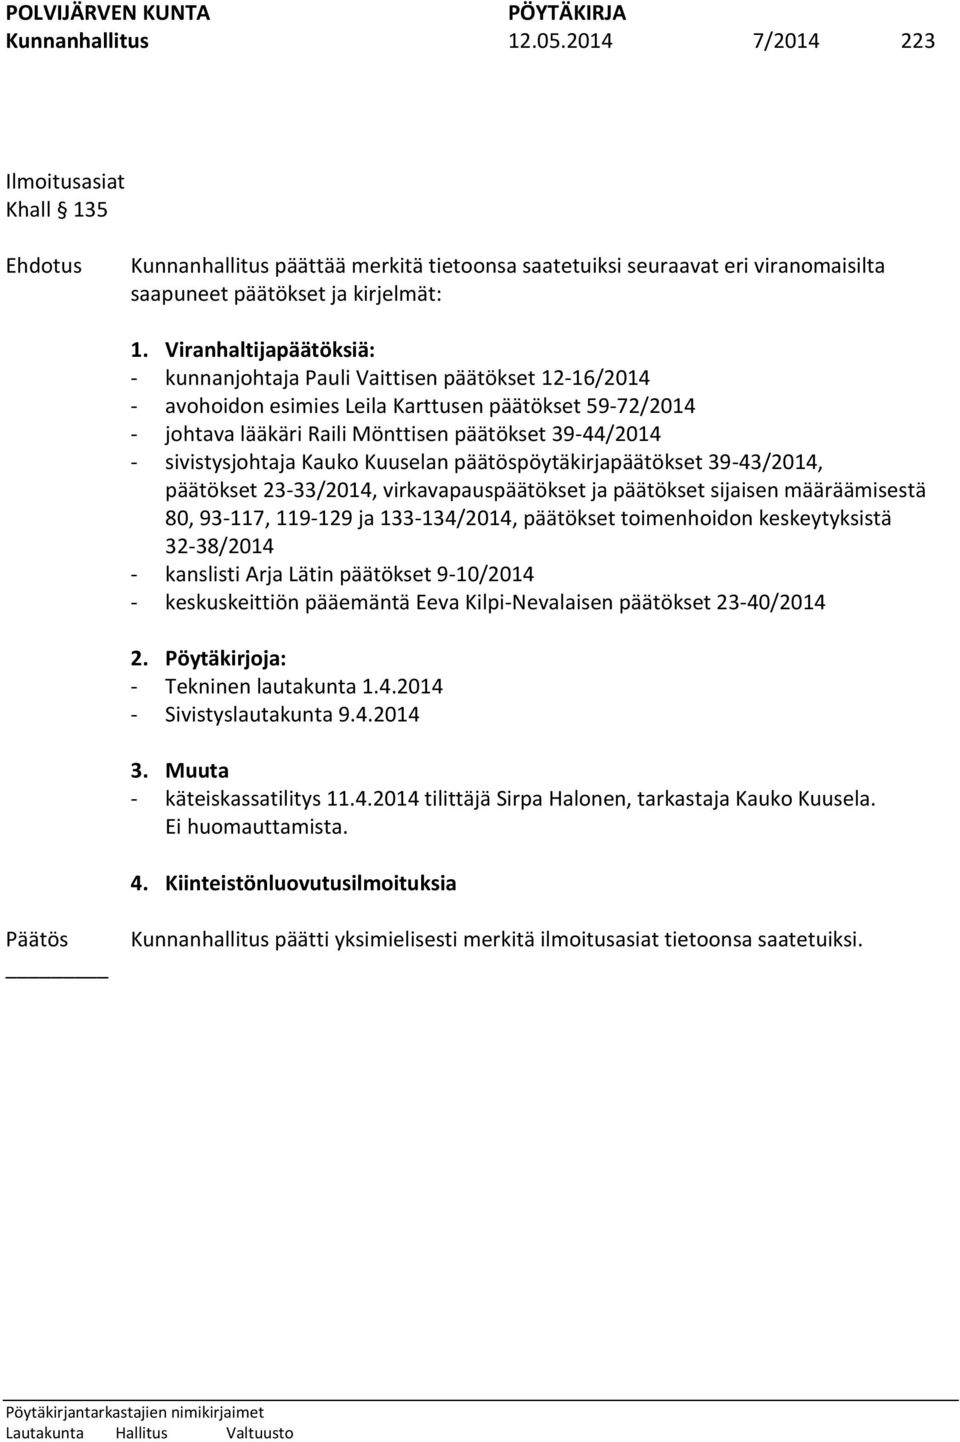 sivistysjohtaja Kauko Kuuselan päätöspöytäkirjapäätökset 39-43/2014, päätökset 23-33/2014, virkavapauspäätökset ja päätökset sijaisen määräämisestä 80, 93-117, 119-129 ja 133-134/2014, päätökset